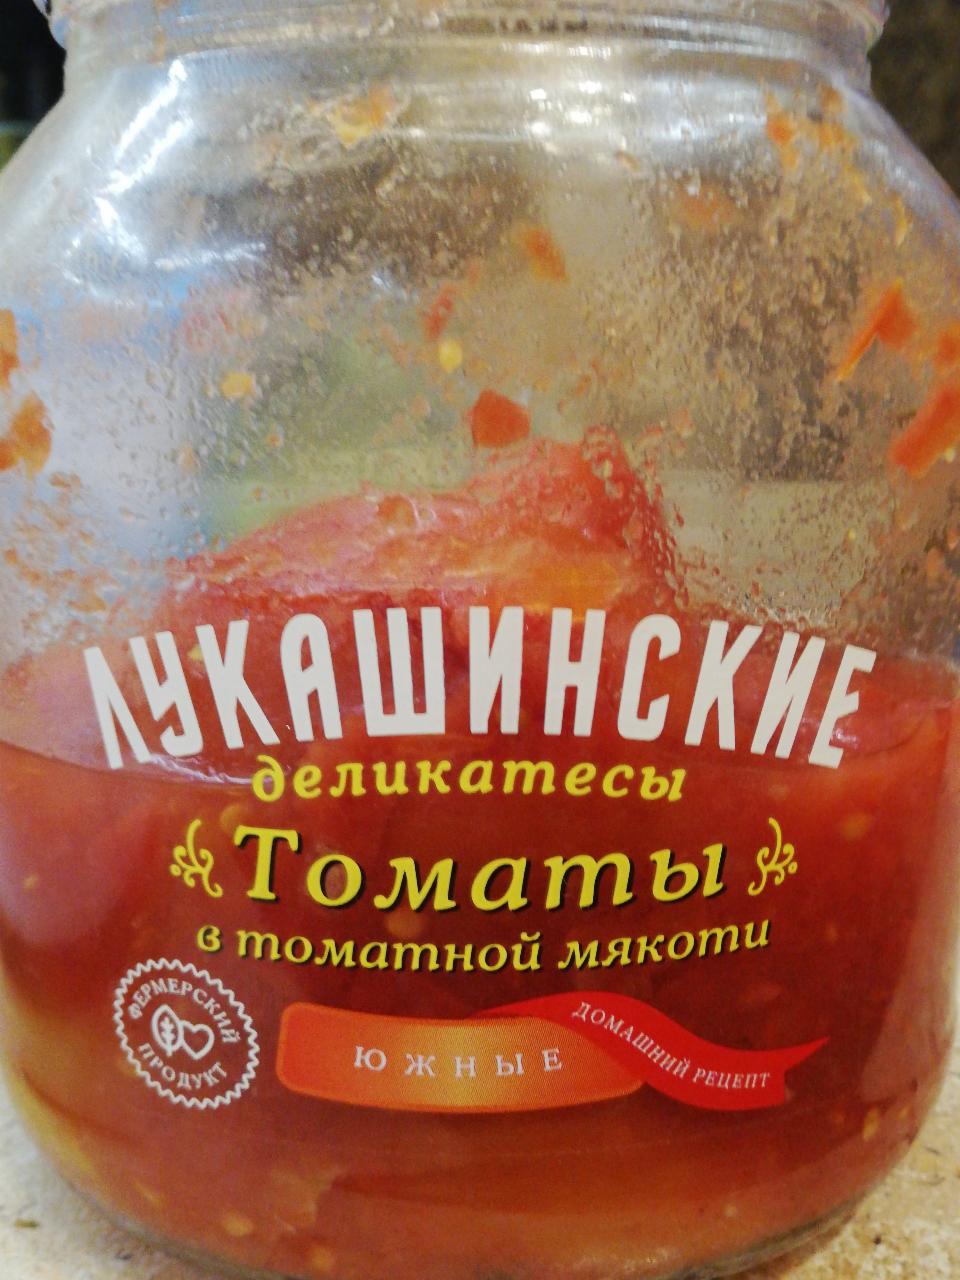 Фото - томаты в томатной мякоти Лукашинские